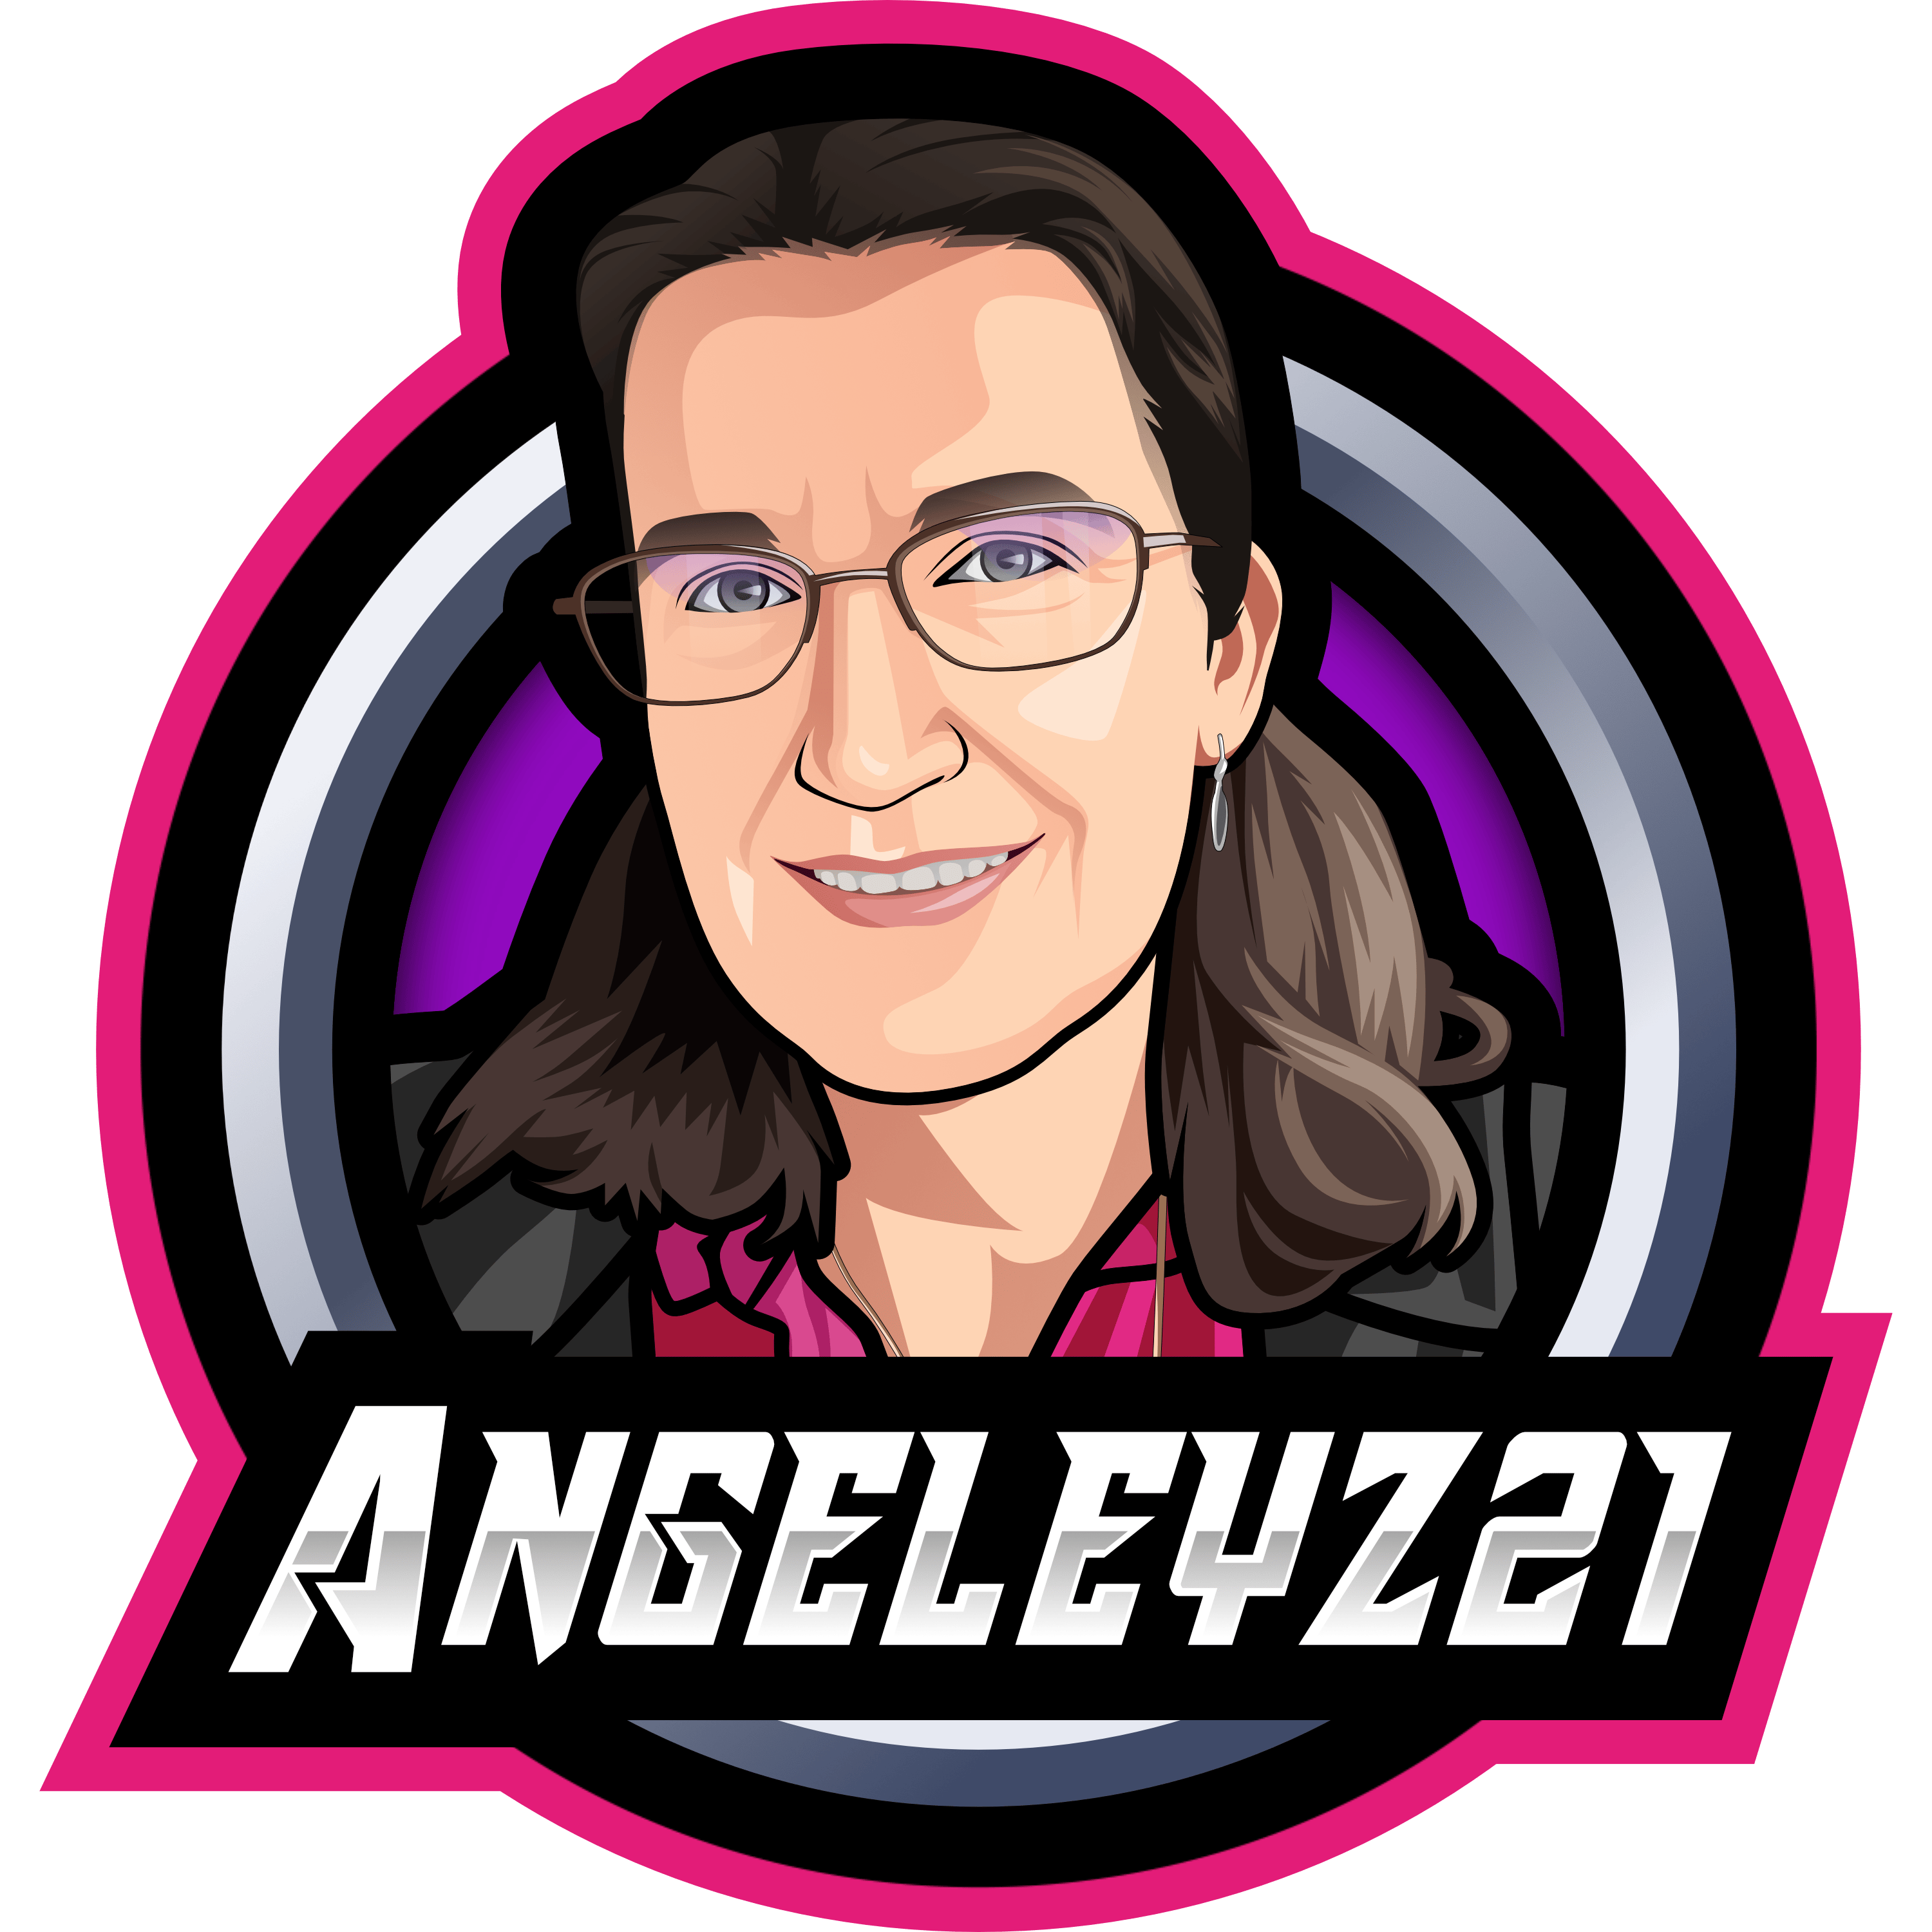 Angeleyz21 아바타